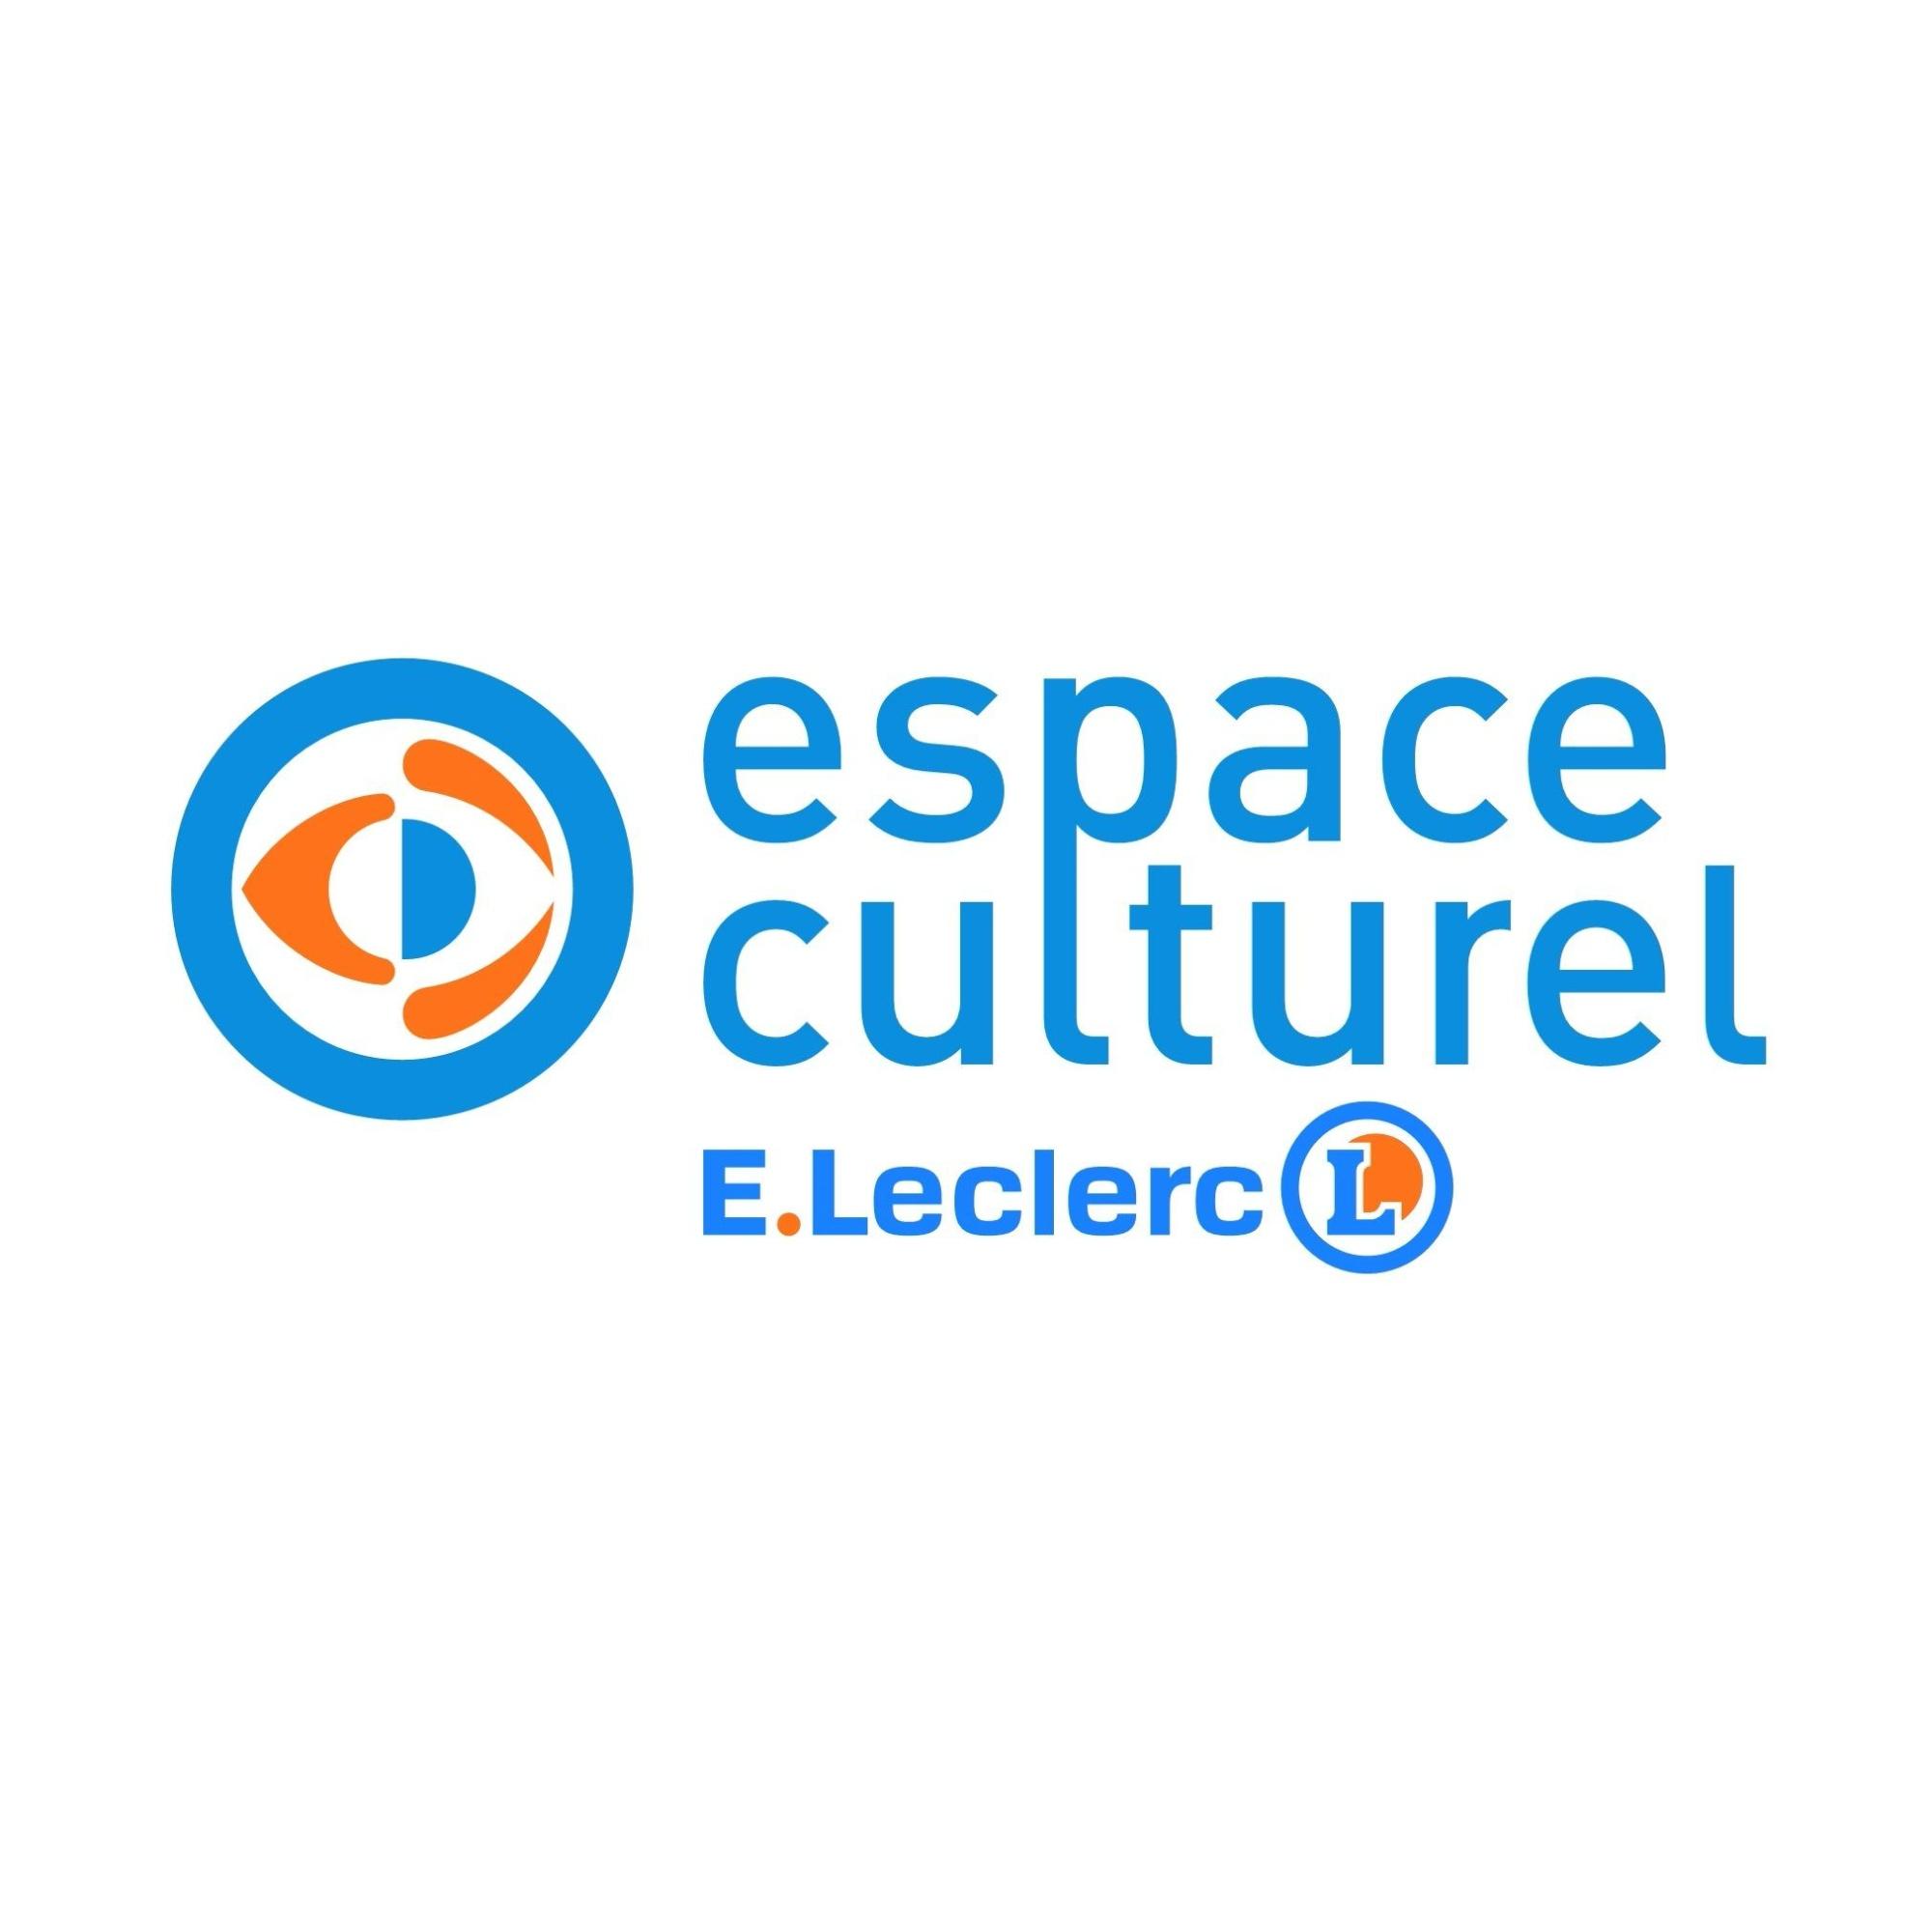 E.leclerc Espace Culturel Firminy